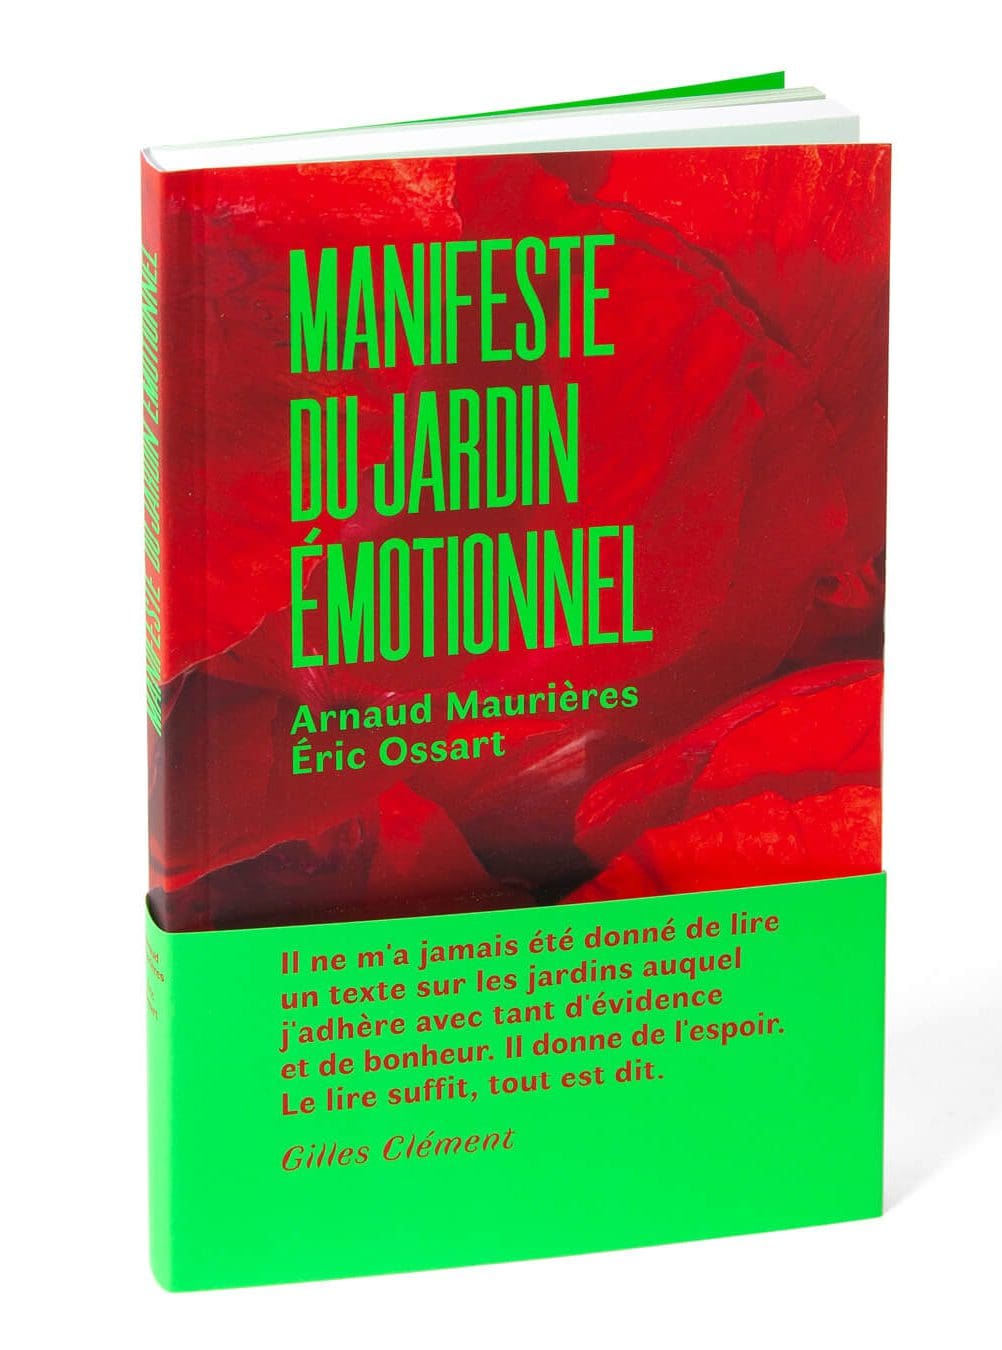 Couverture avec bandeau vert fluo du livre manifeste du jardin émotionnel, design IchetKar